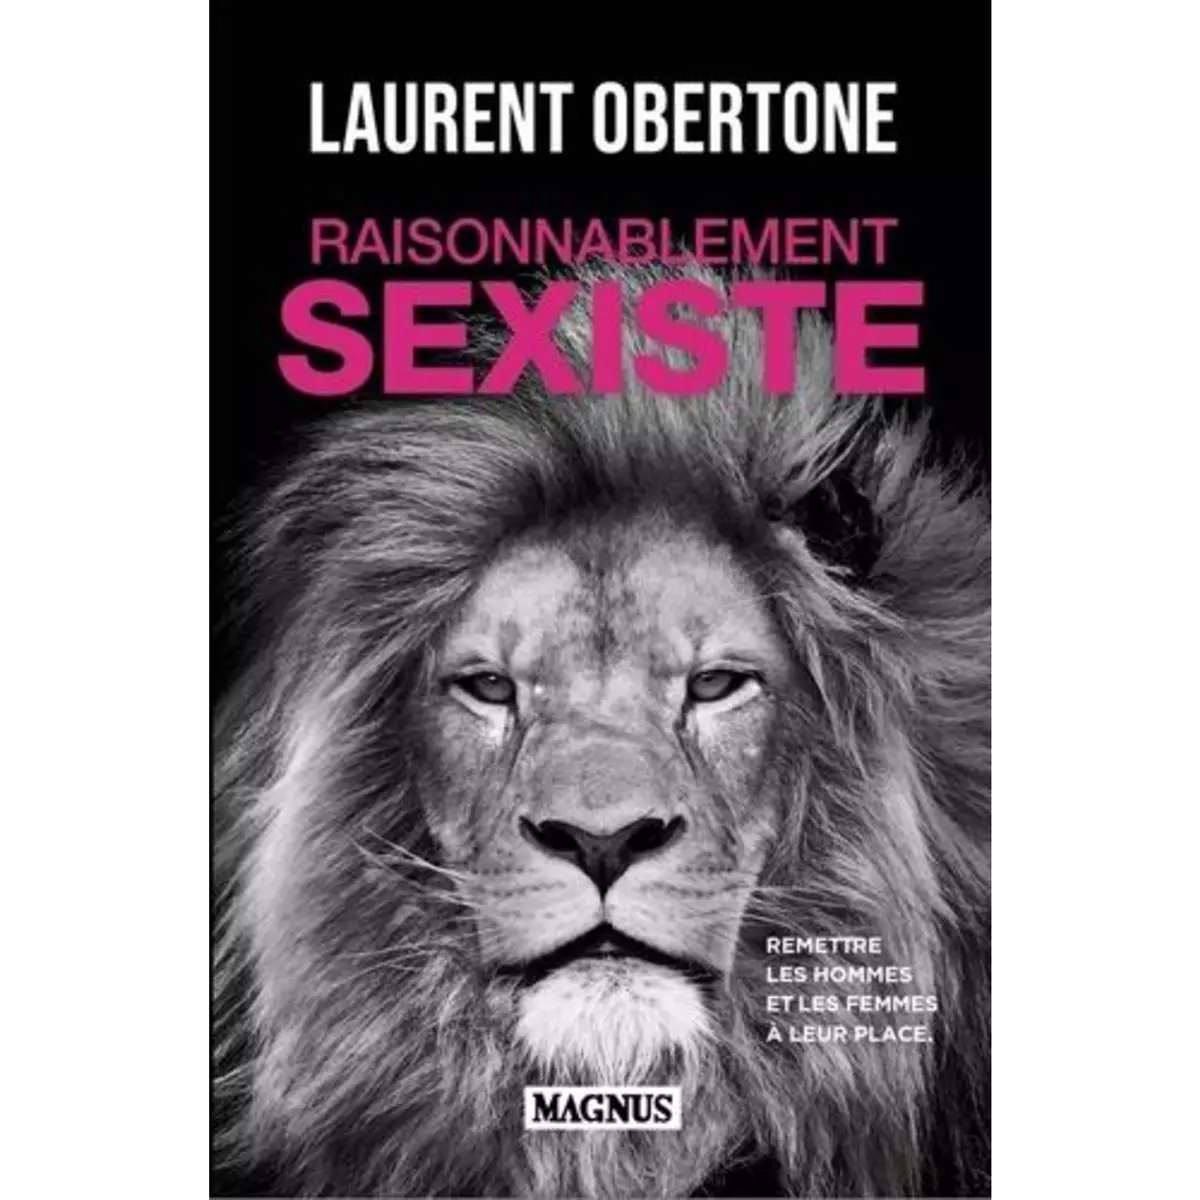  RAISONNABLEMENT SEXISTE. REMETTRE LES HOMMES ET LES FEMMES A LEUR PLACE, Obertone Laurent